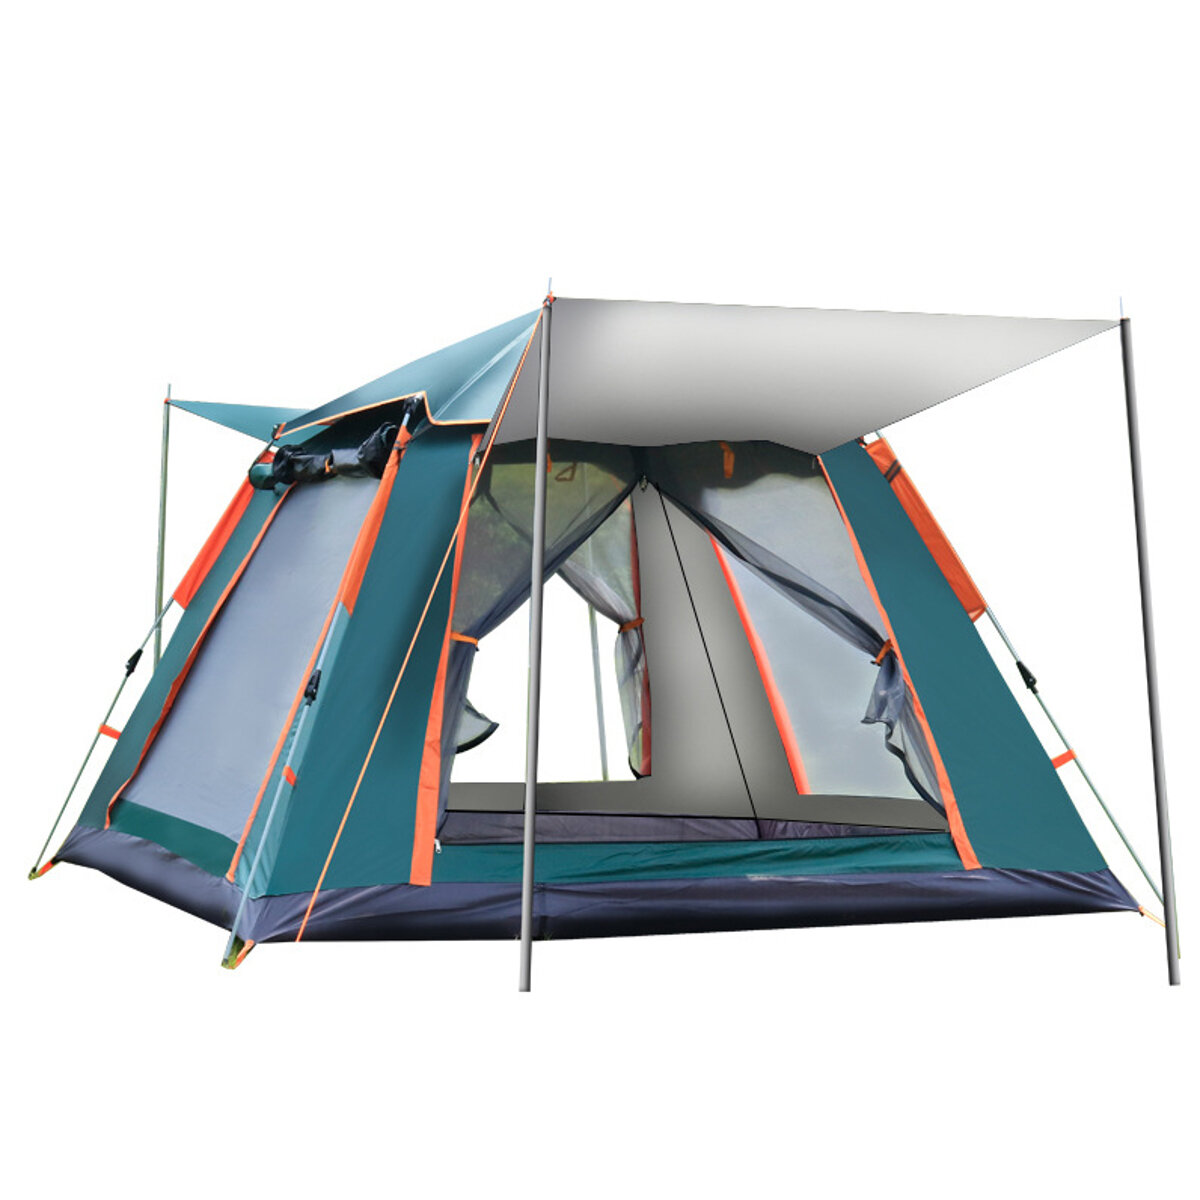 IPRee® 6-7 personen volautomatische tent Zilverlijm Outdoor Camping Familie Picknick Reistent